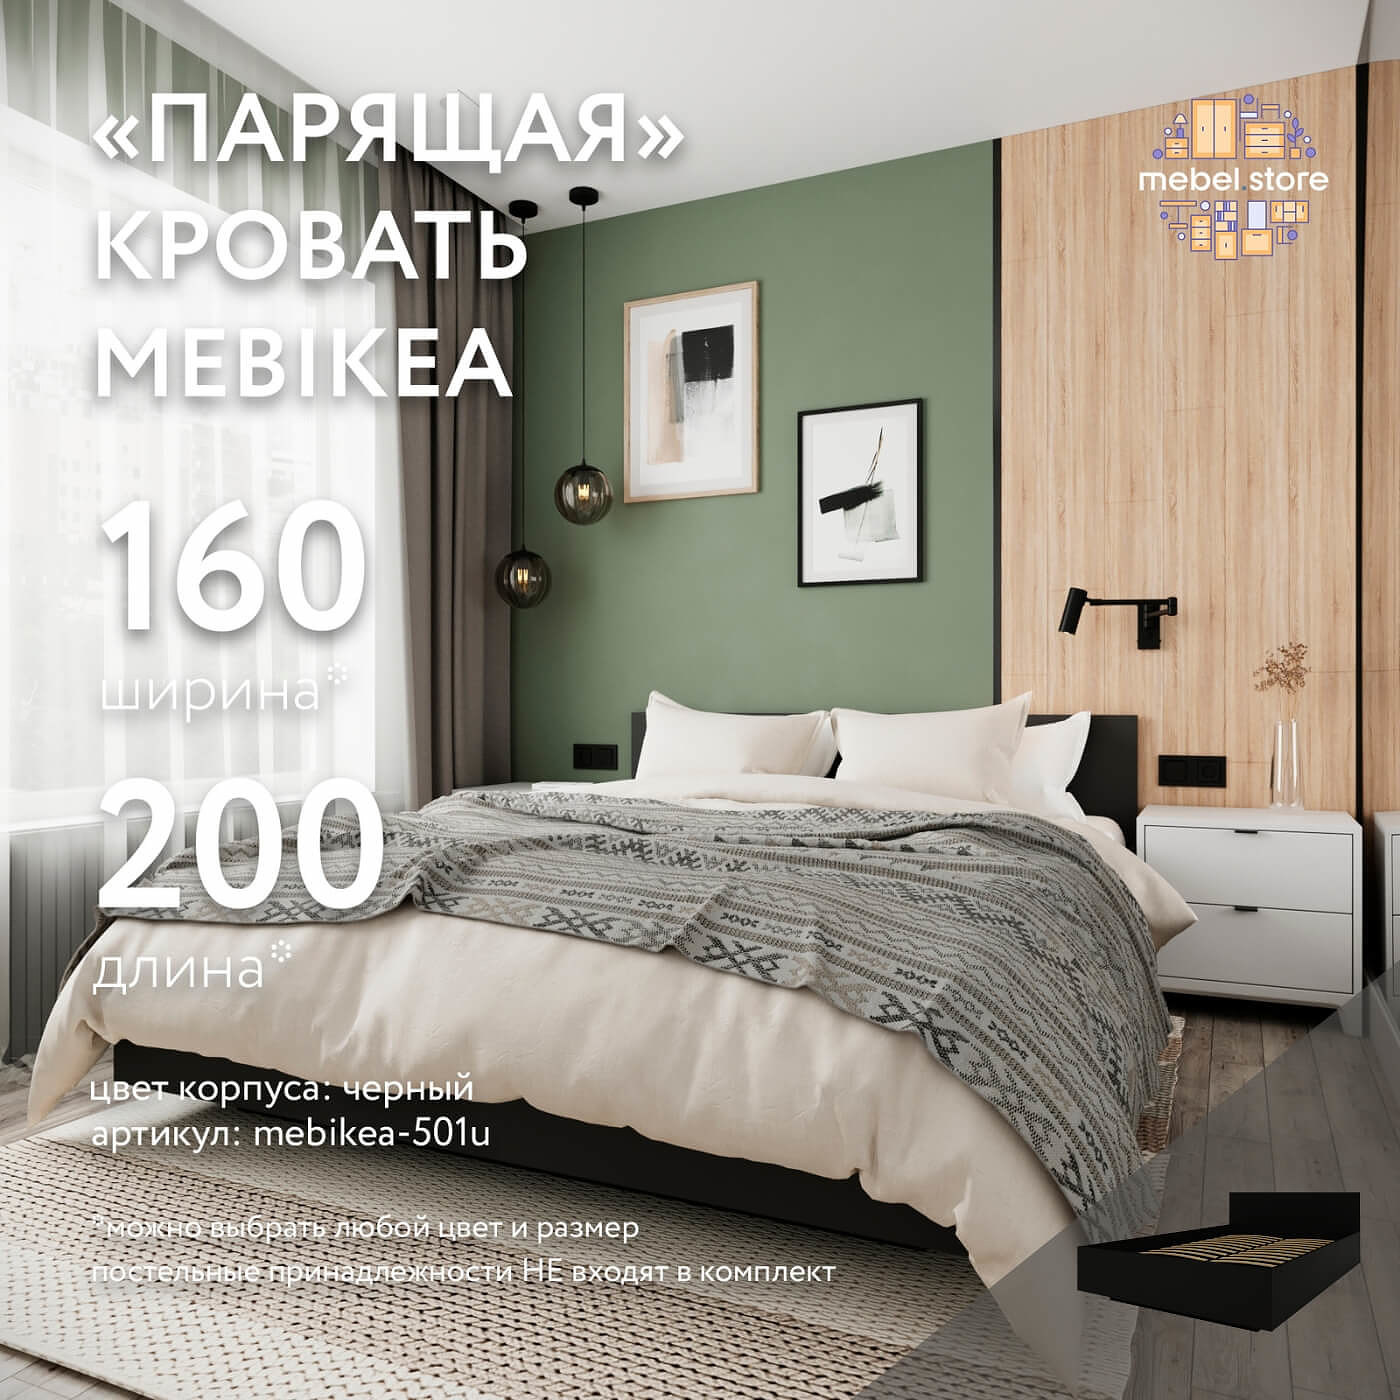 Кровать Mebikea-501u двуспальная минимализм - фото 1 large